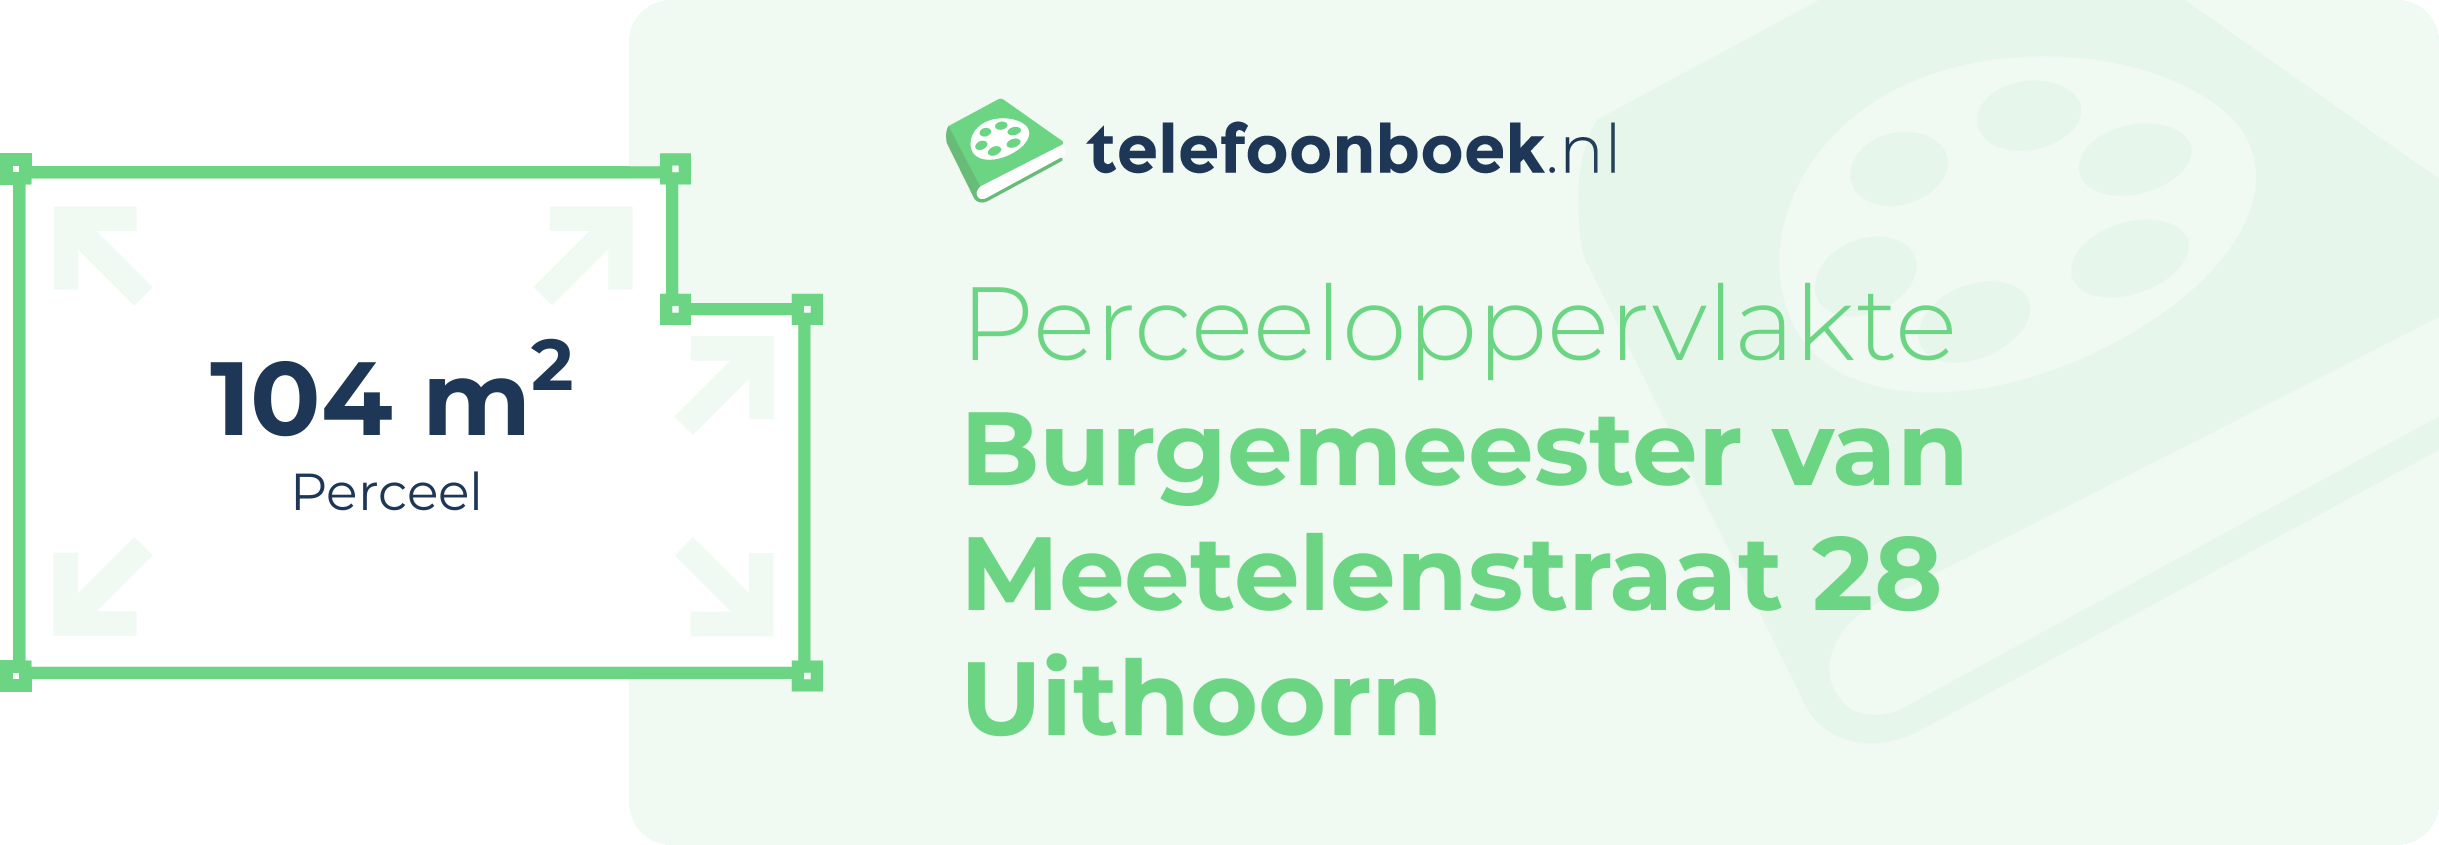 Perceeloppervlakte Burgemeester Van Meetelenstraat 28 Uithoorn